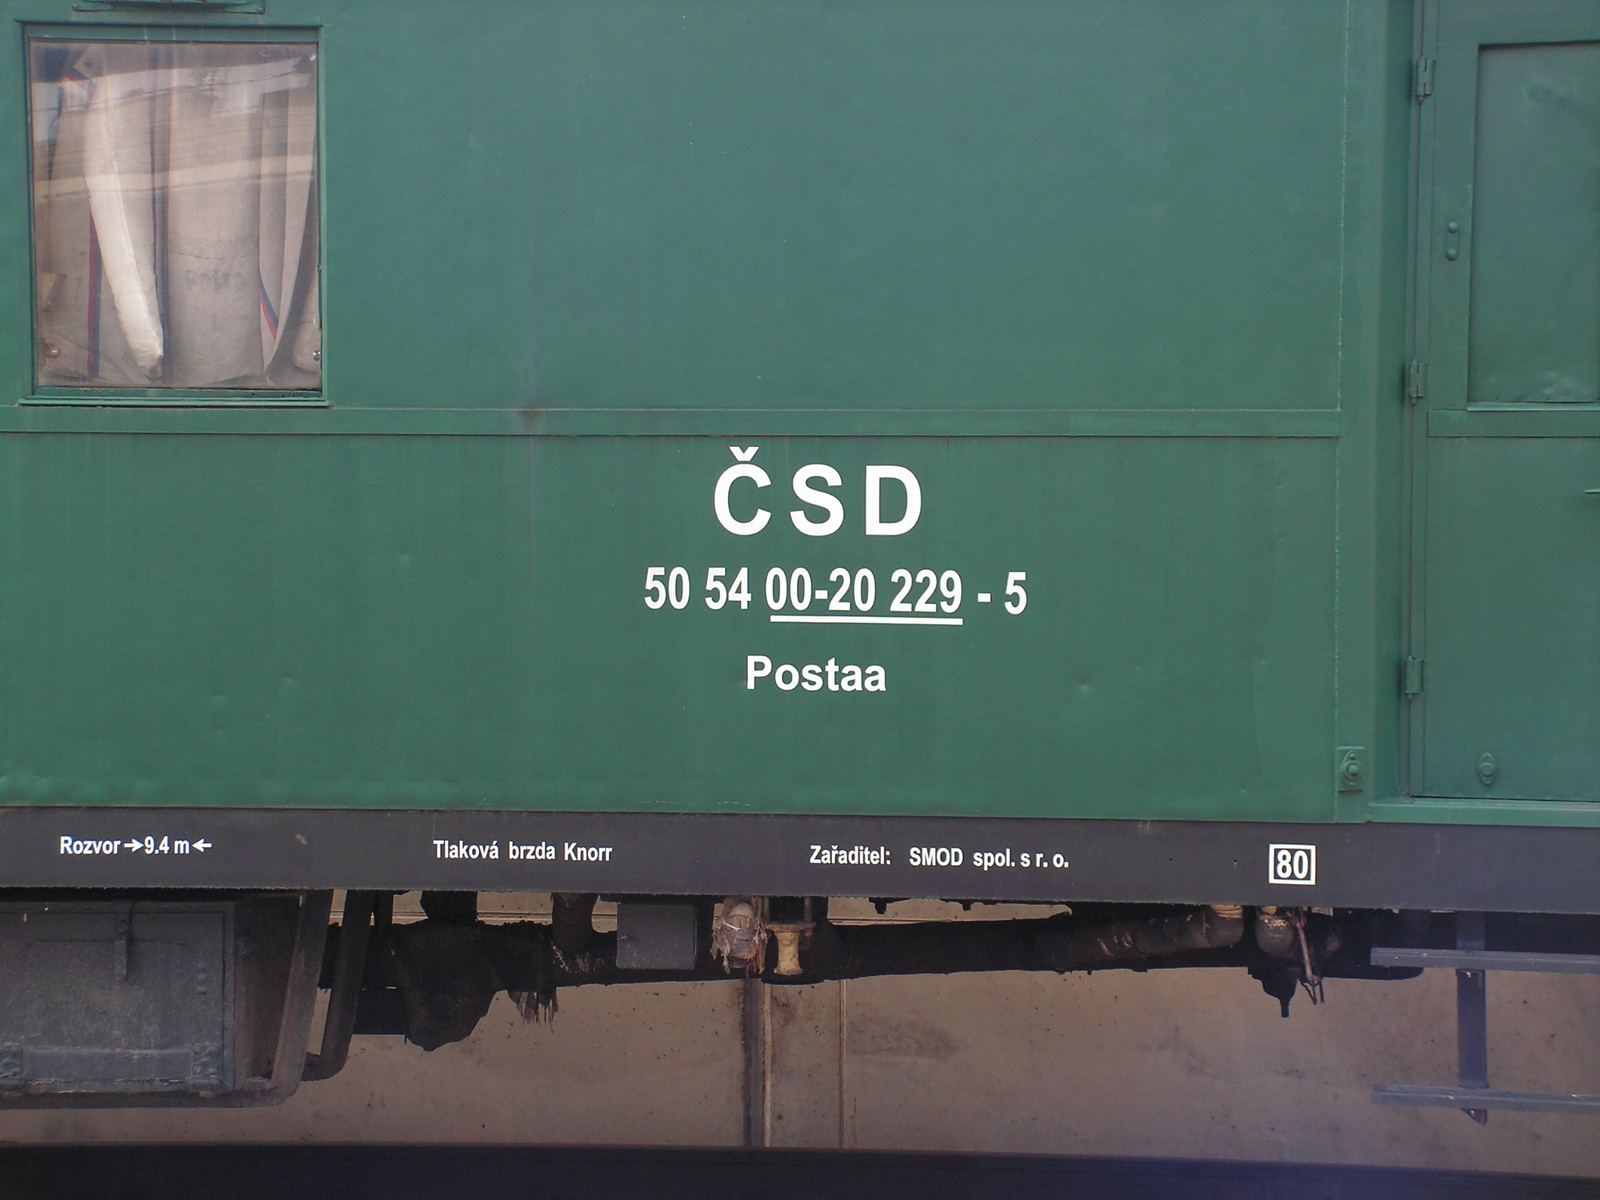 CSD 50 54 00-20 229-5 Postaa (Břeclav), SzG3